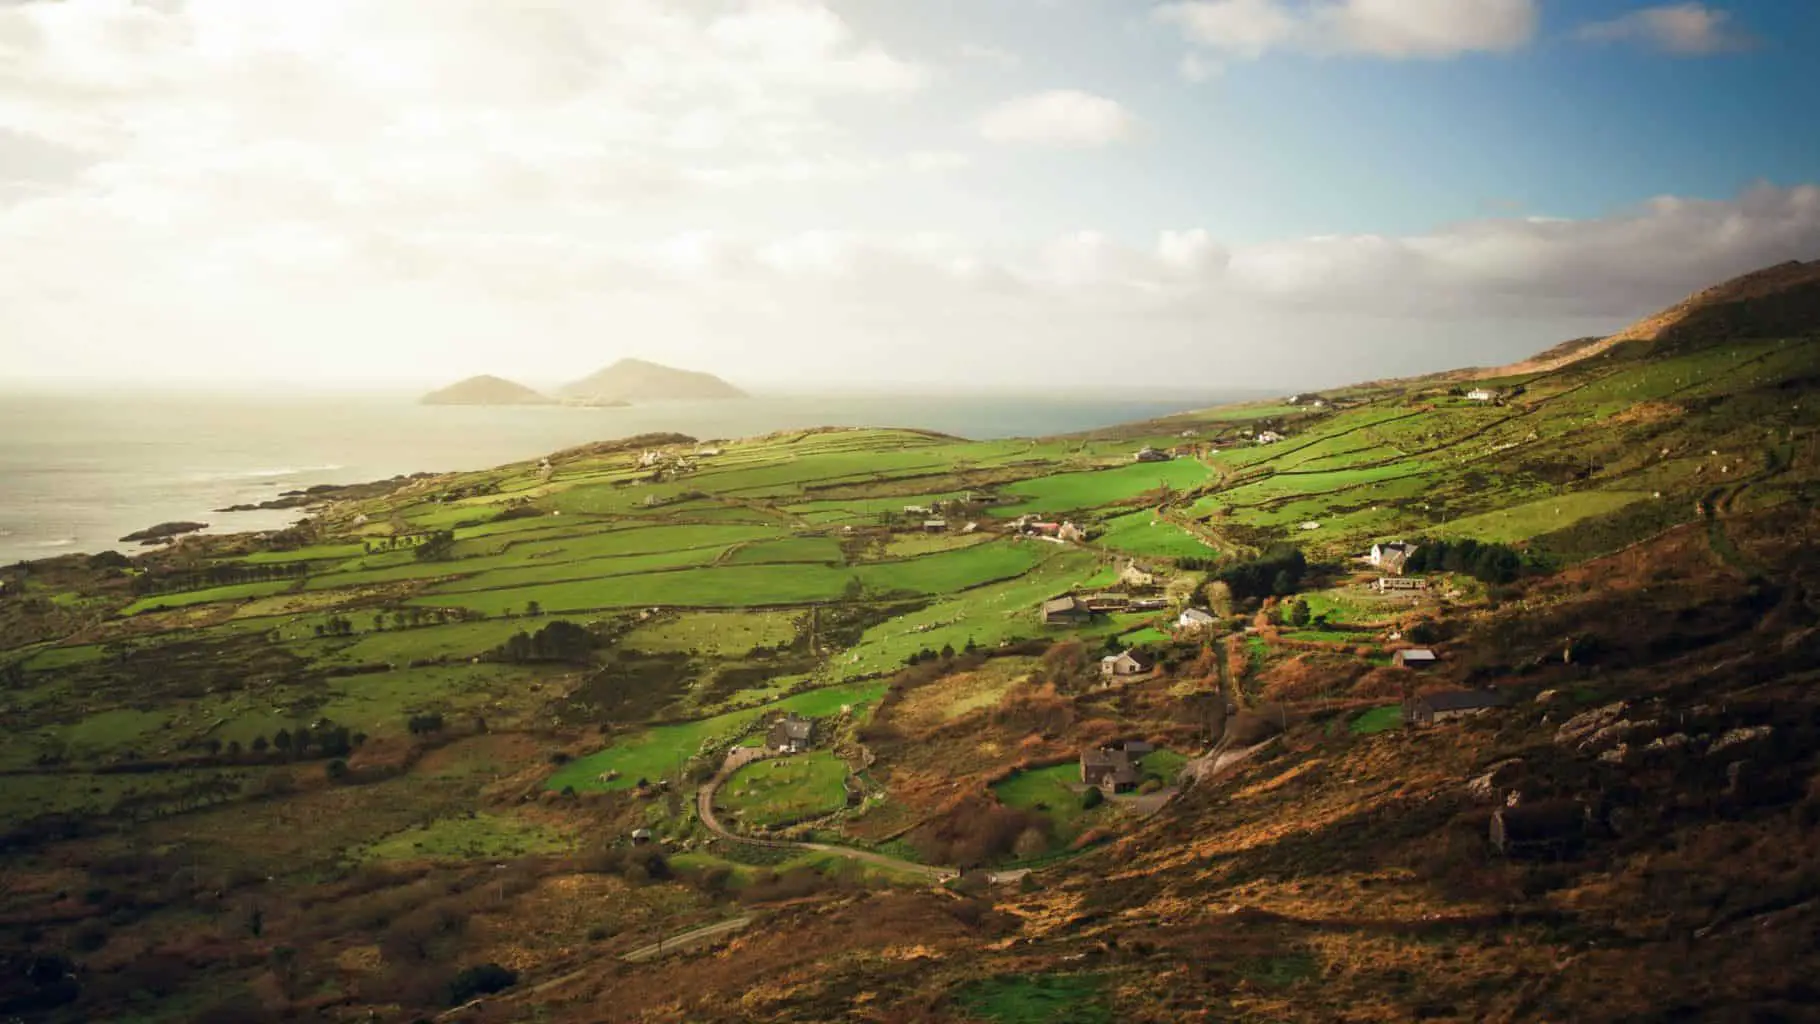 Ireland guide for digital nomads